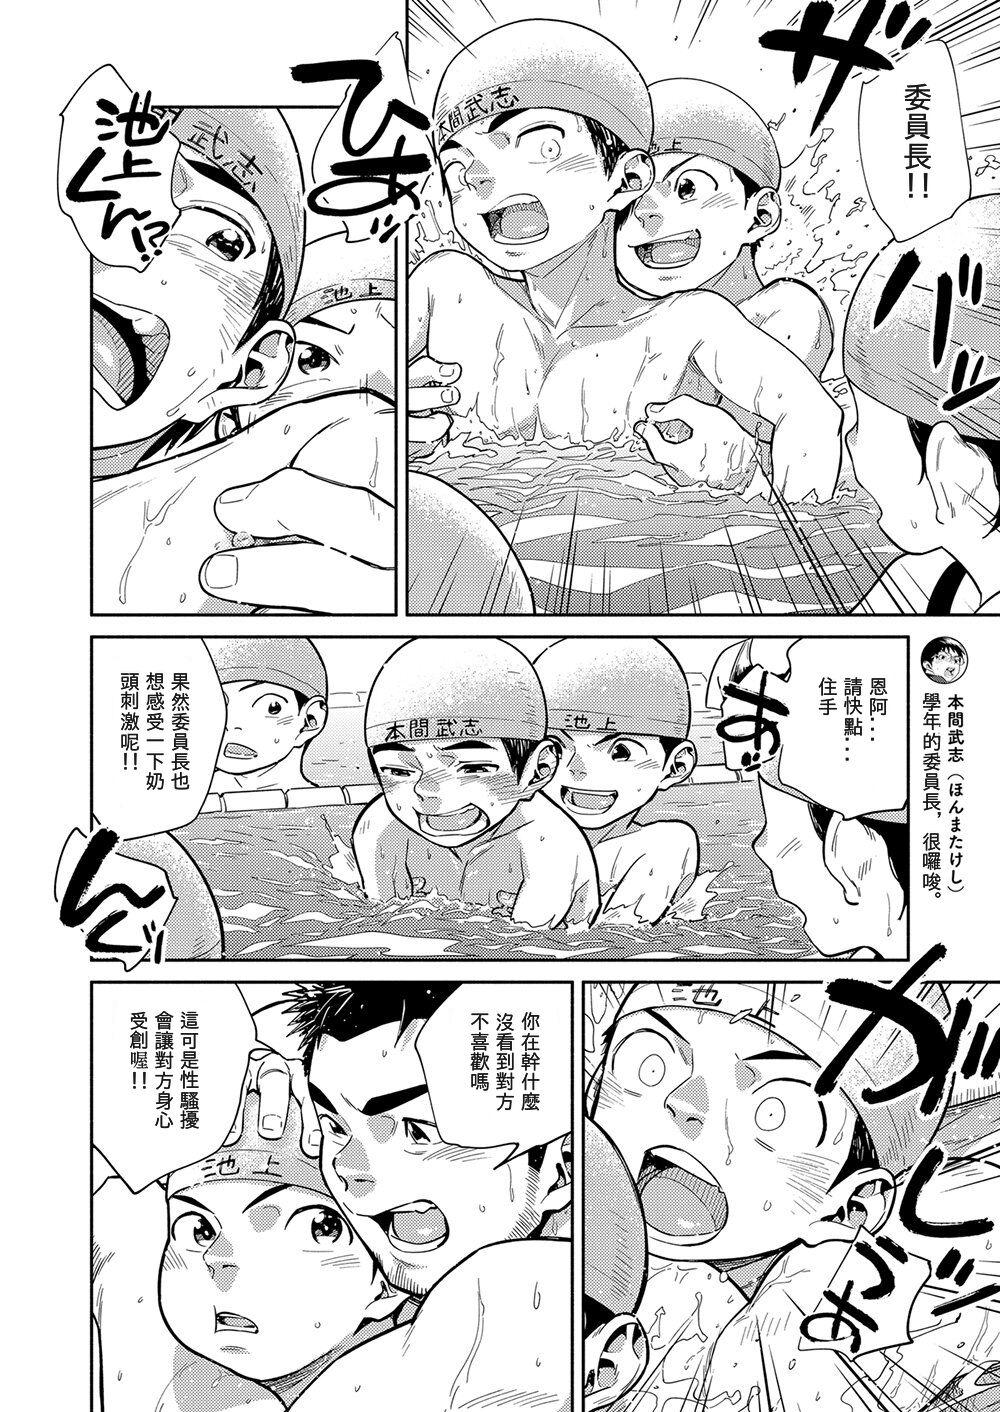 Pussylick Manga Shounen Zoom Vol. 29 - Original Students - Page 10